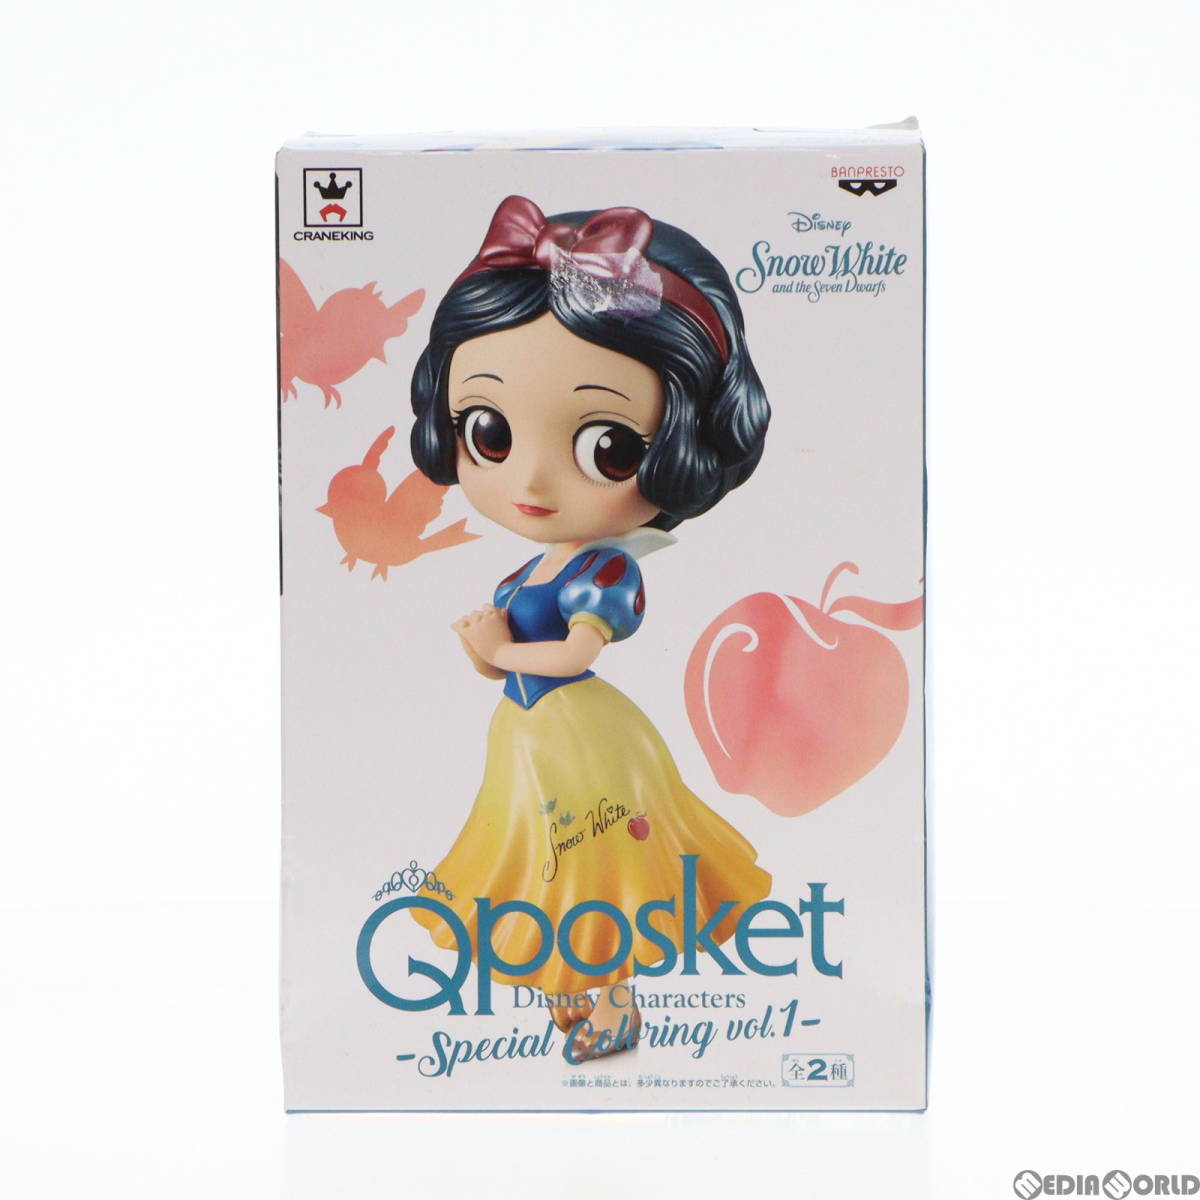 【中古】[FIG]白雪姫 Q posket Disney Characters -Special Coloring vol.1- フィギュア プライズ(37346) バンプレスト(61716300)_画像1